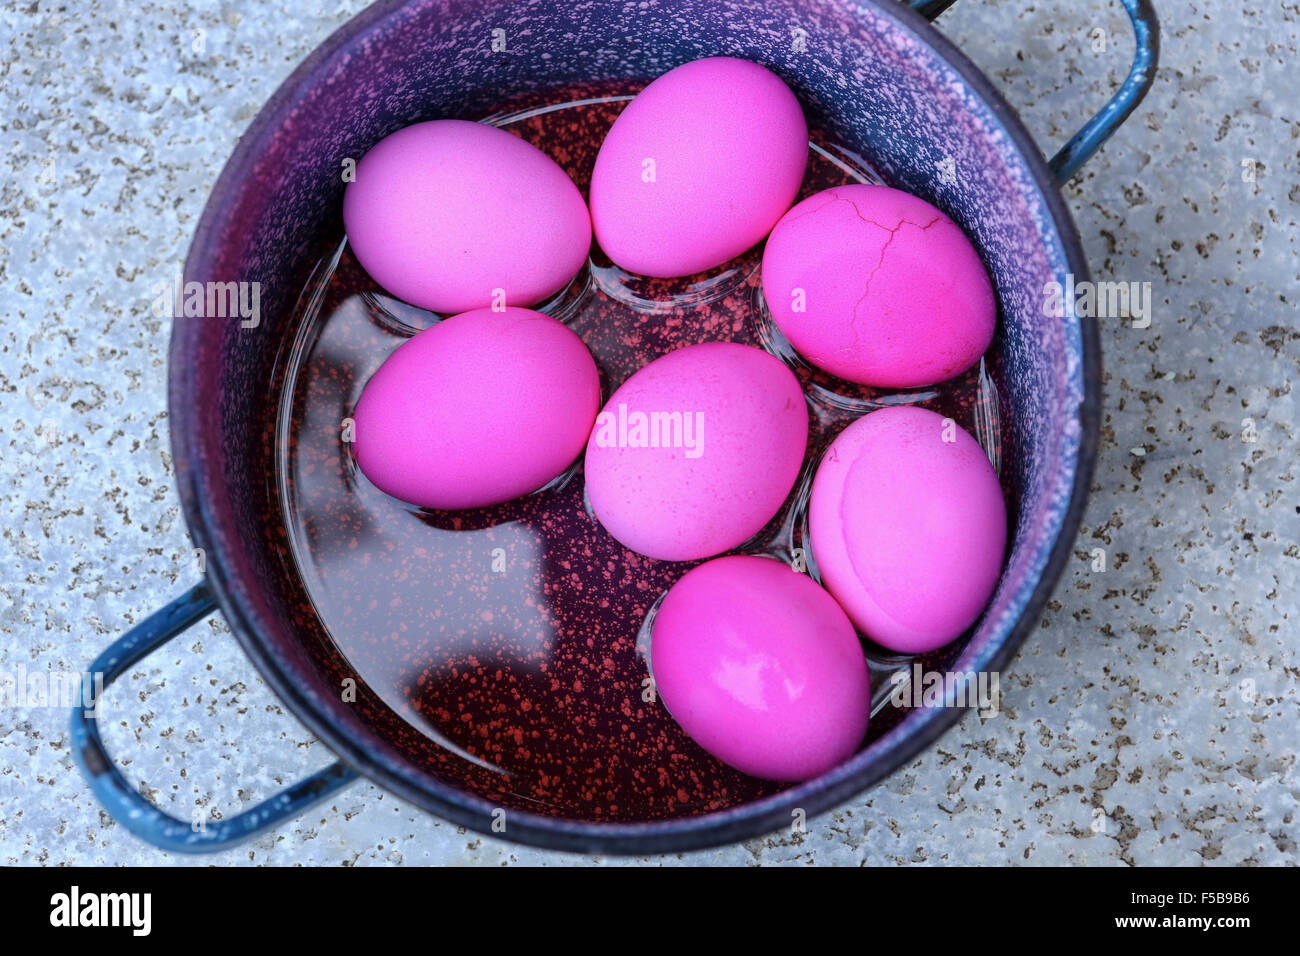 Rojo huevos duros (teñidos con remolacha) un buen comienzo para los huevos de Pascua (teñidos con remolacha) Esta imagen tiene una restricción para el lic Foto de stock